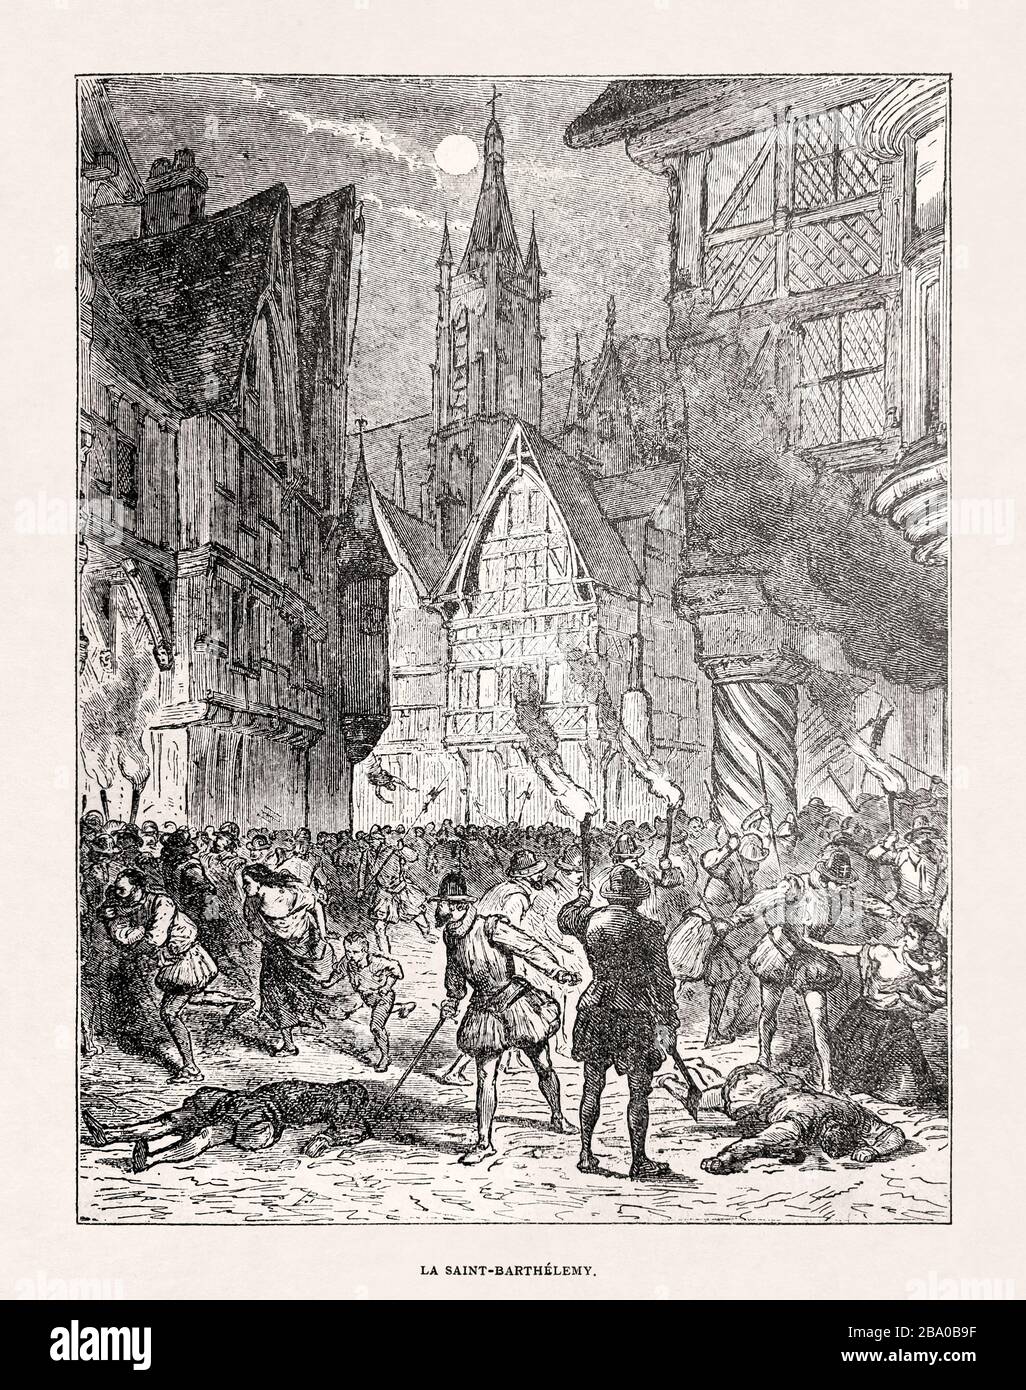 Ilustración en blanco y negro de la masacre del día de San Bartolomé. Foto de stock